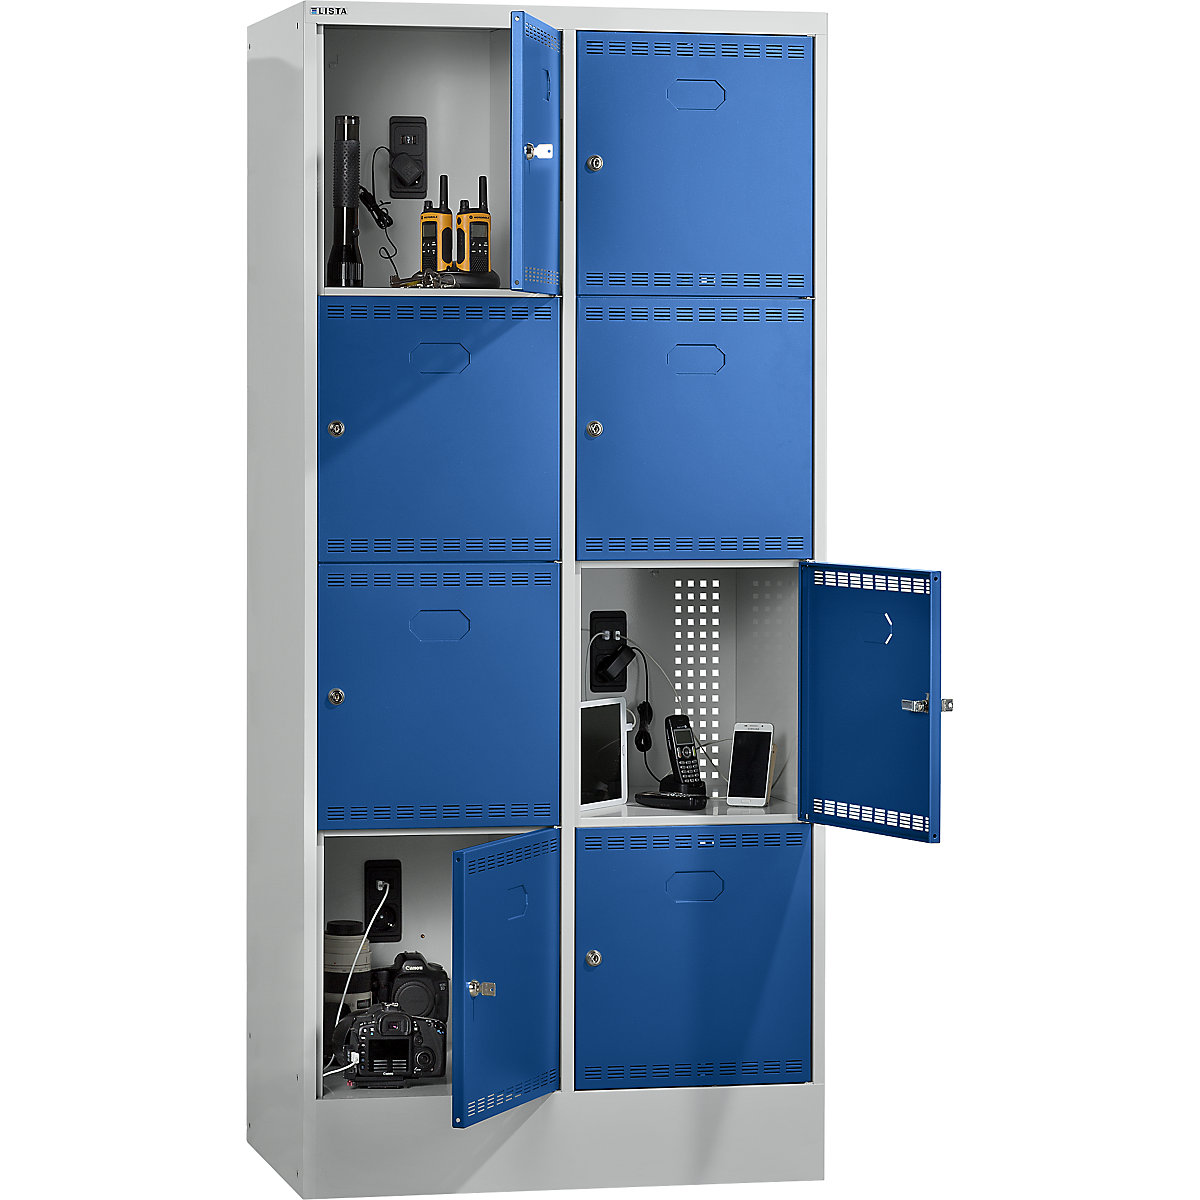 Accuoplaadkast met stroomvoorziening en lockers – LISTA, met 2 x 4 vakken, 1 x 230 V, 1 x USB, grijs/blauw-5